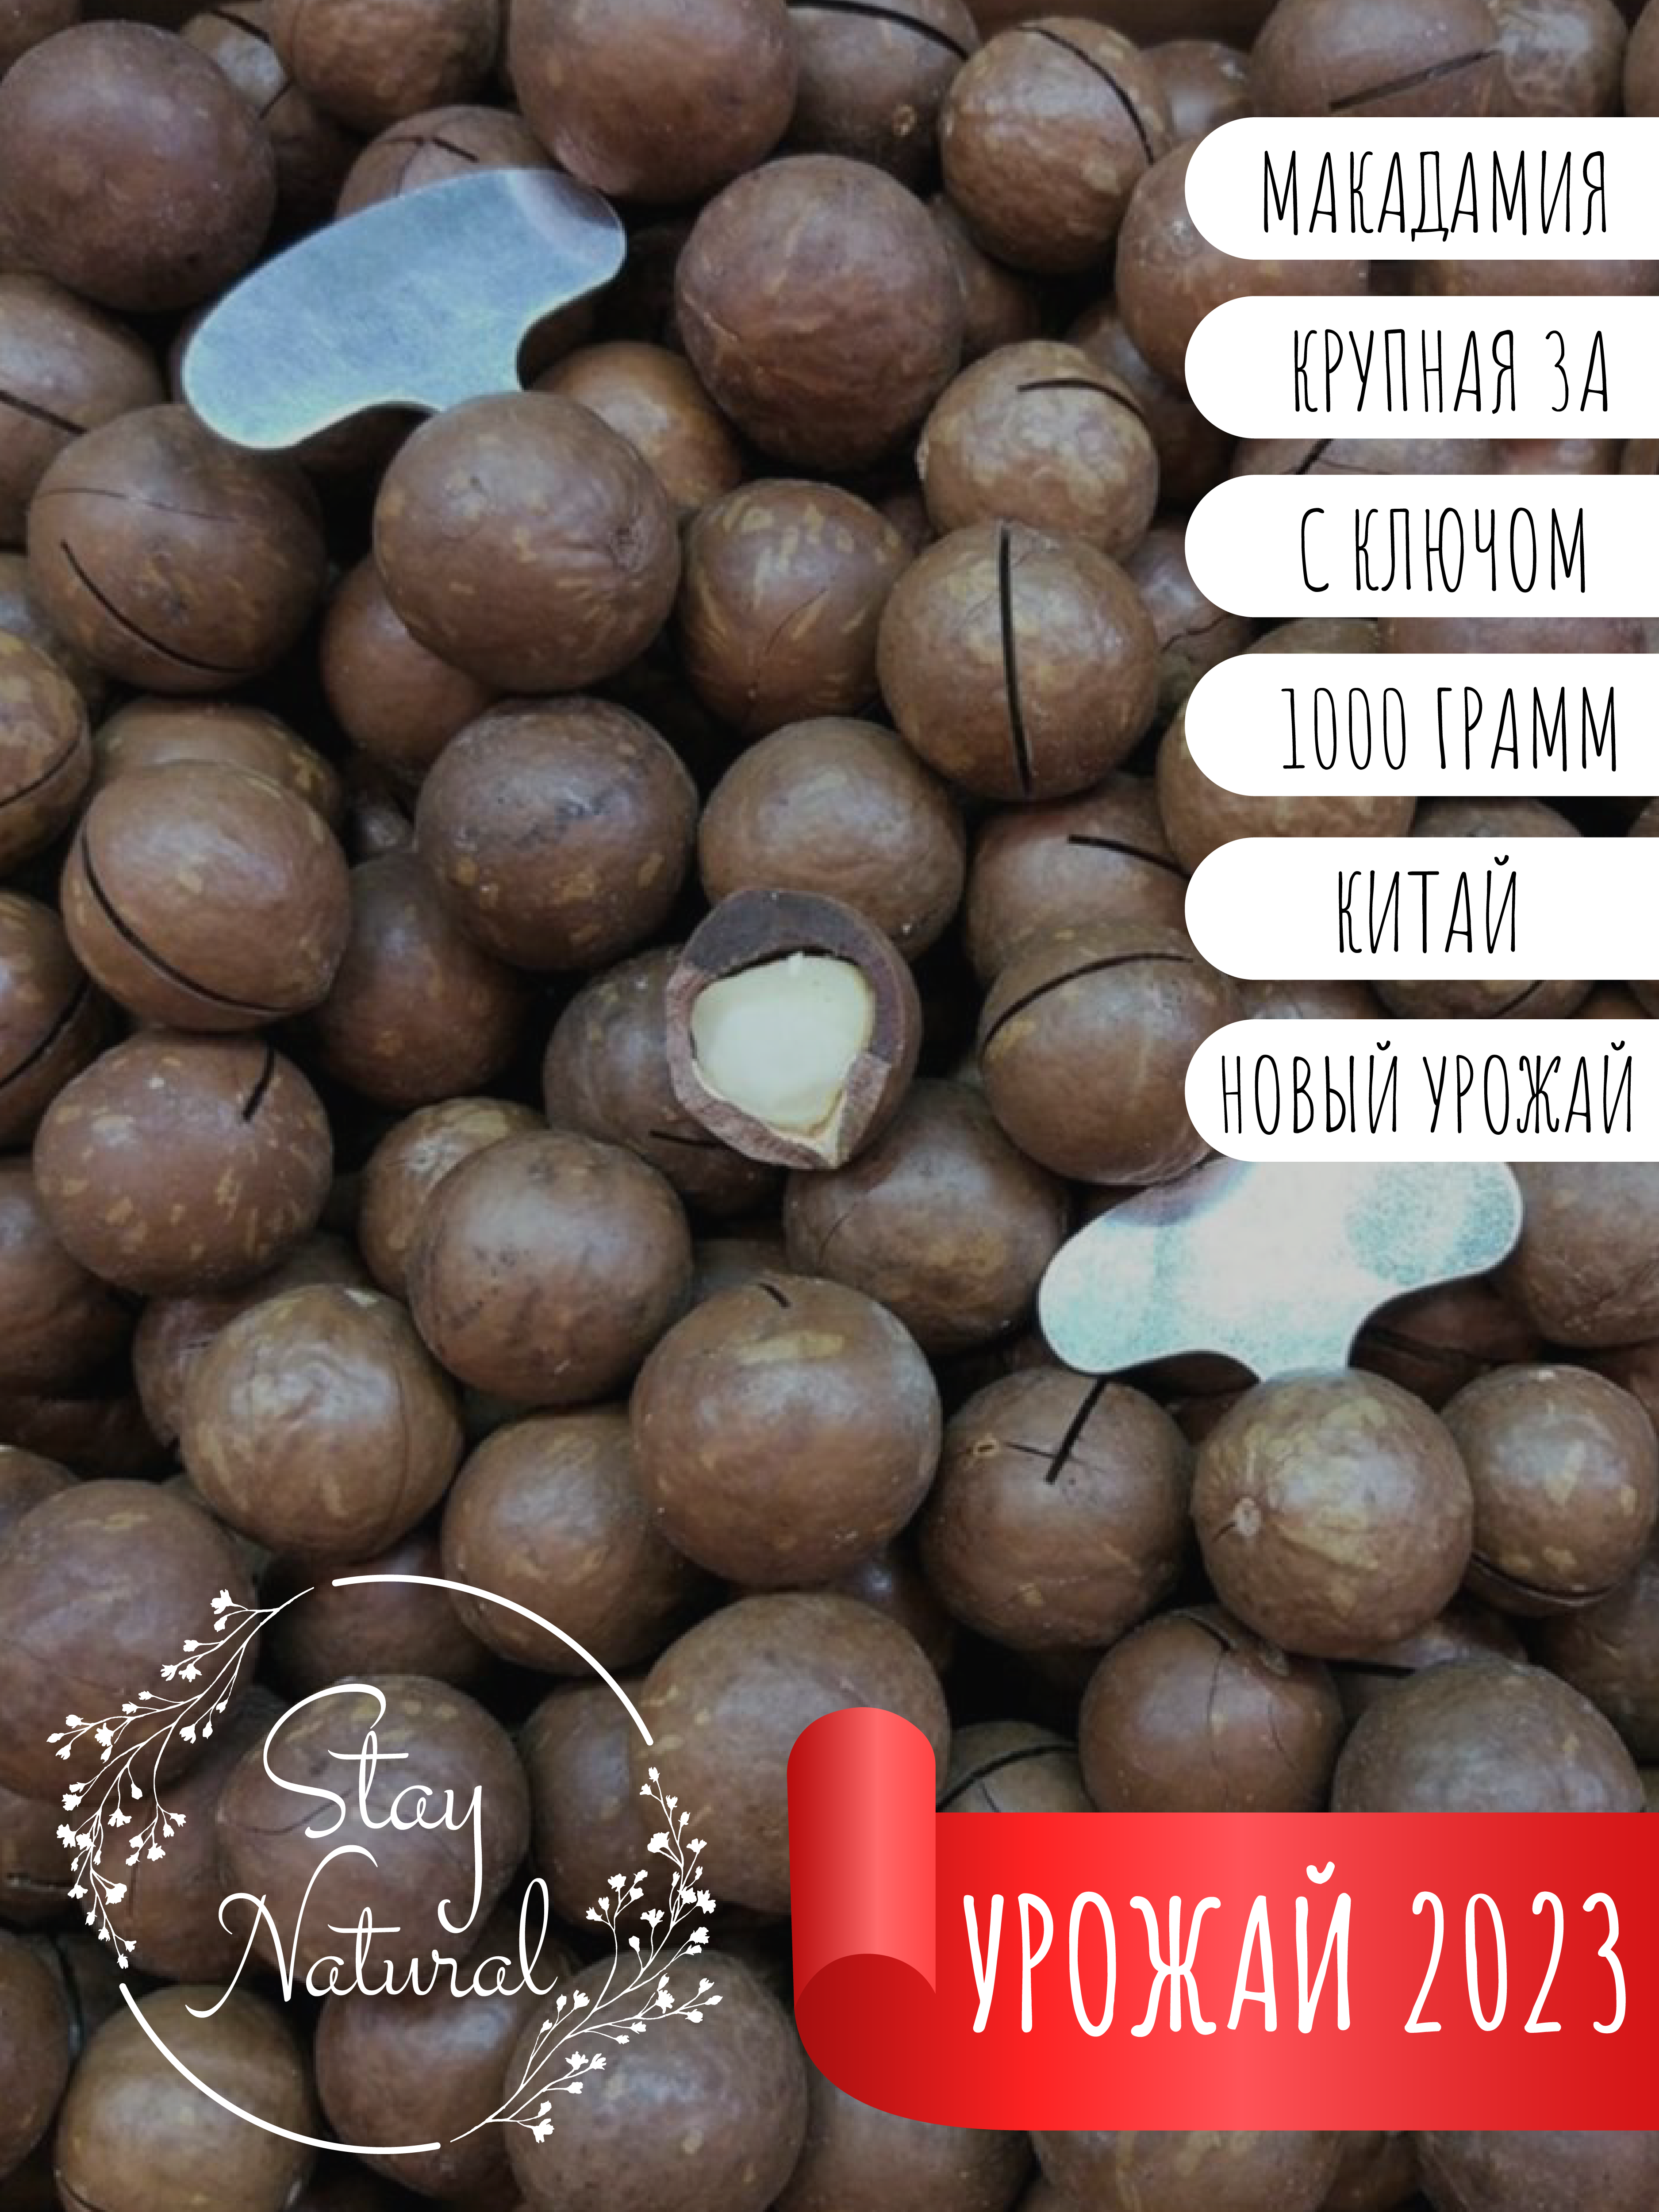 Орехи макадамия 3А в скорлупе STAY NATURAL 1000 г/Натуральный подарок